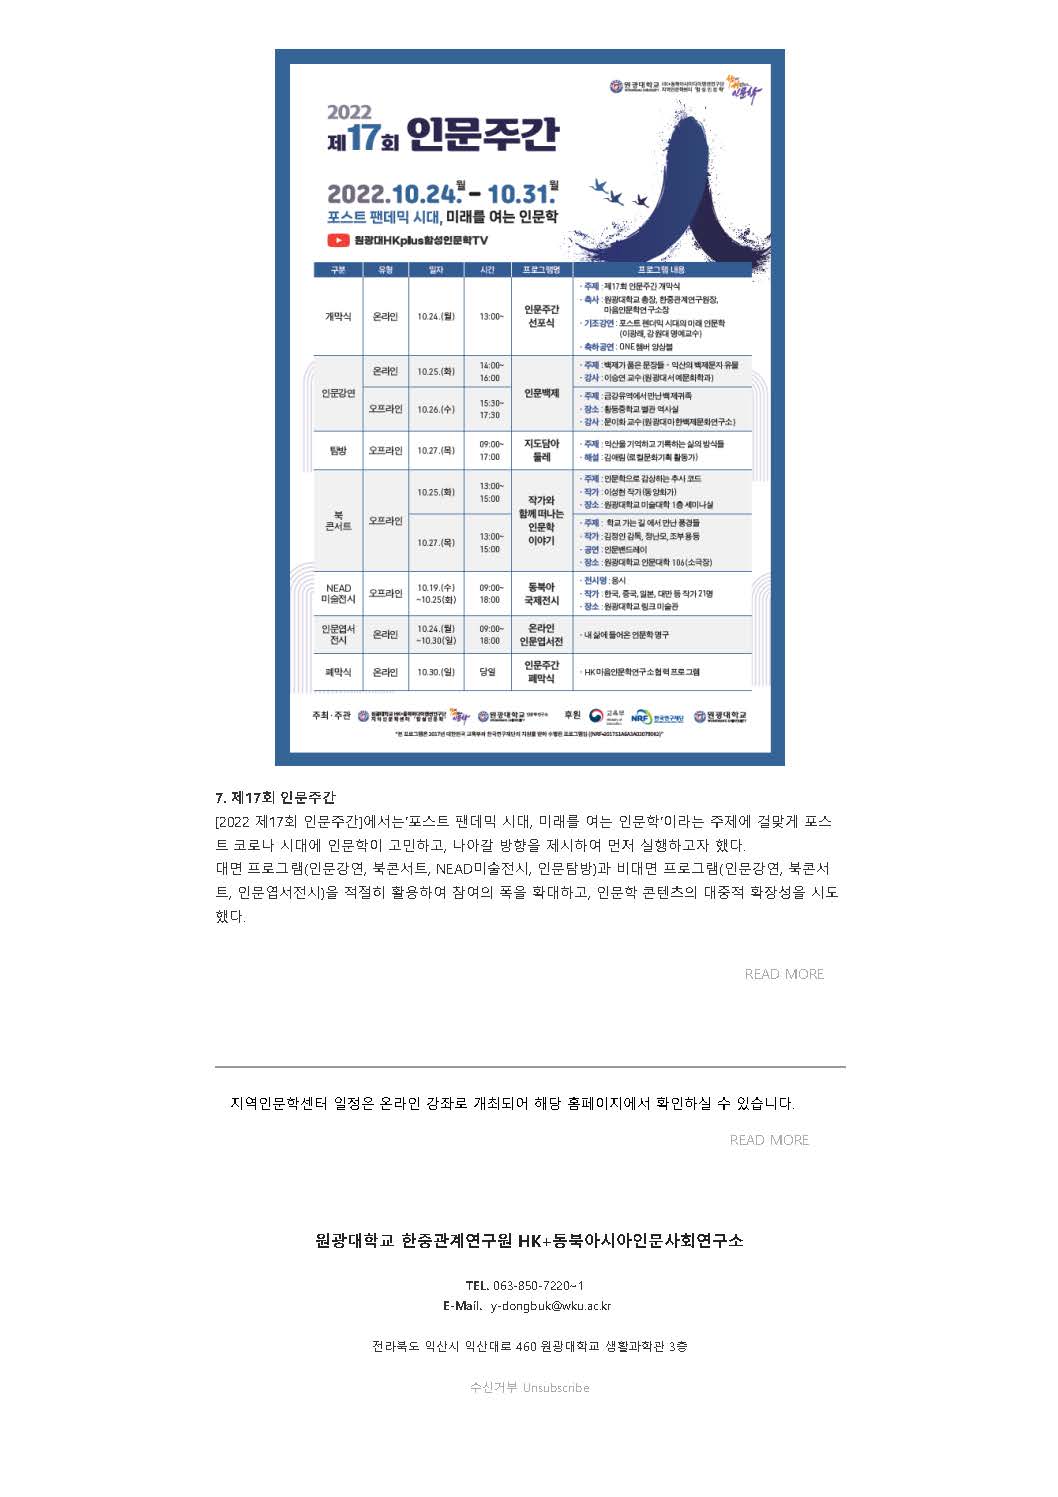 원광대 HK+ 동북아시아인문사회연구소 뉴스레터 VOL.13_페이지_13.jpg